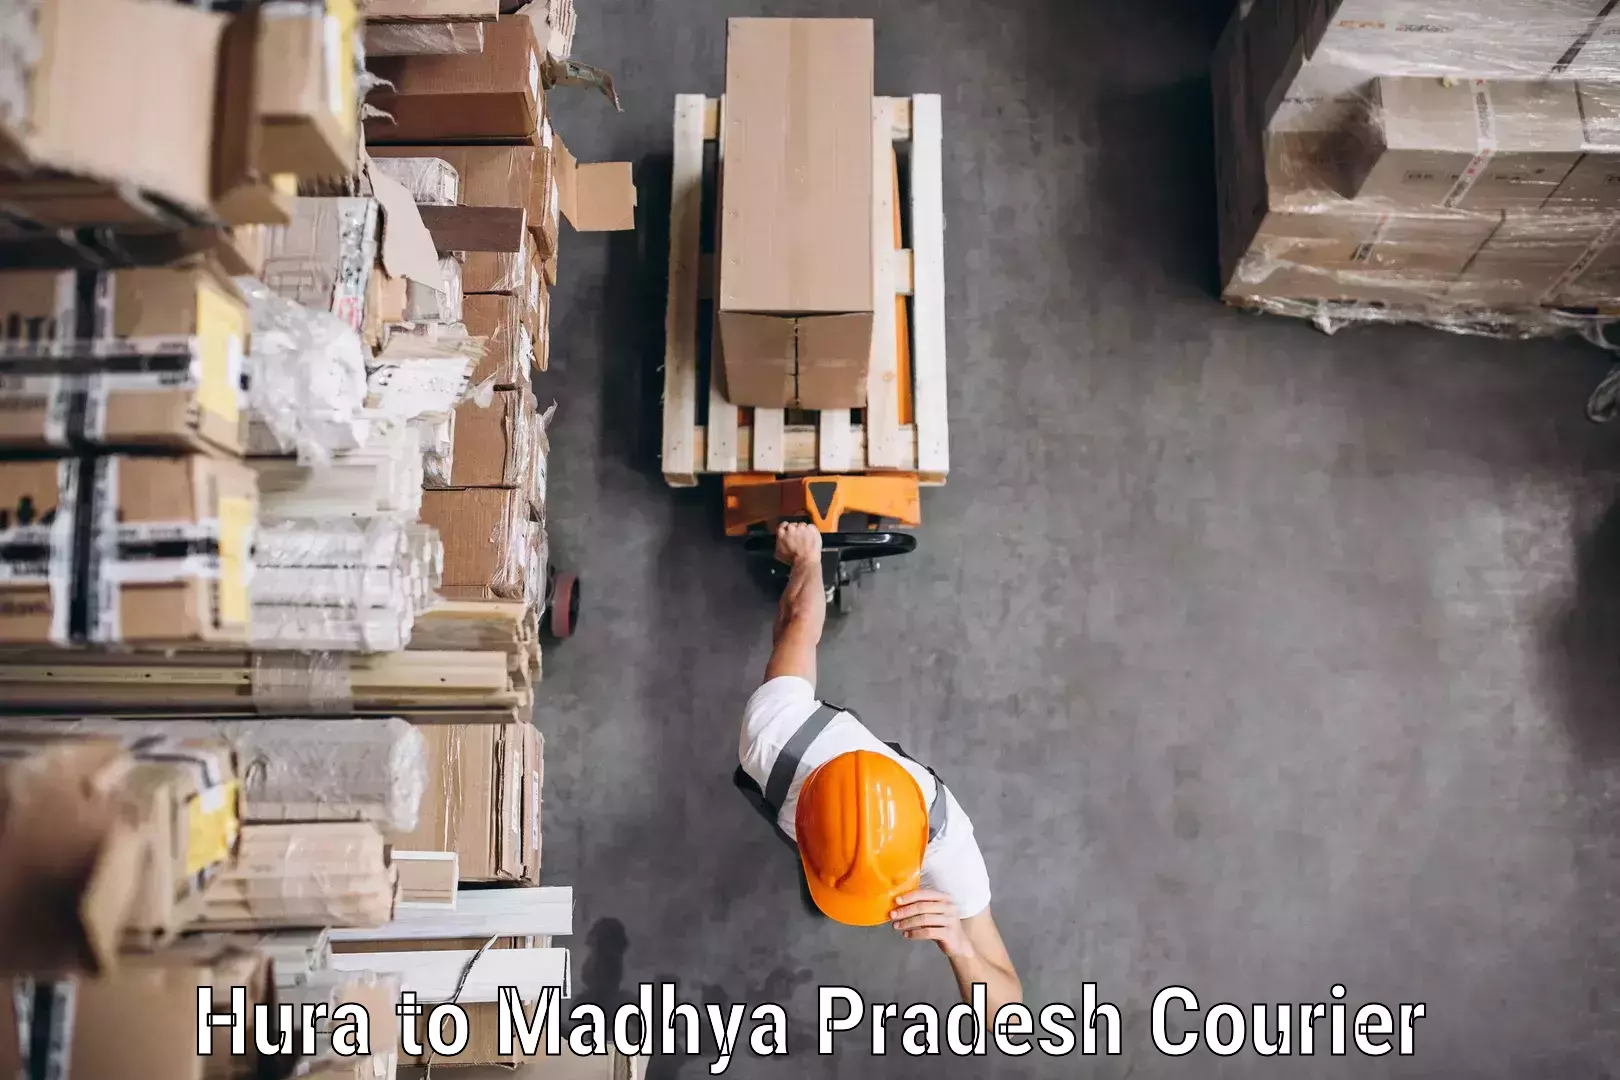 Courier membership Hura to Madhya Pradesh